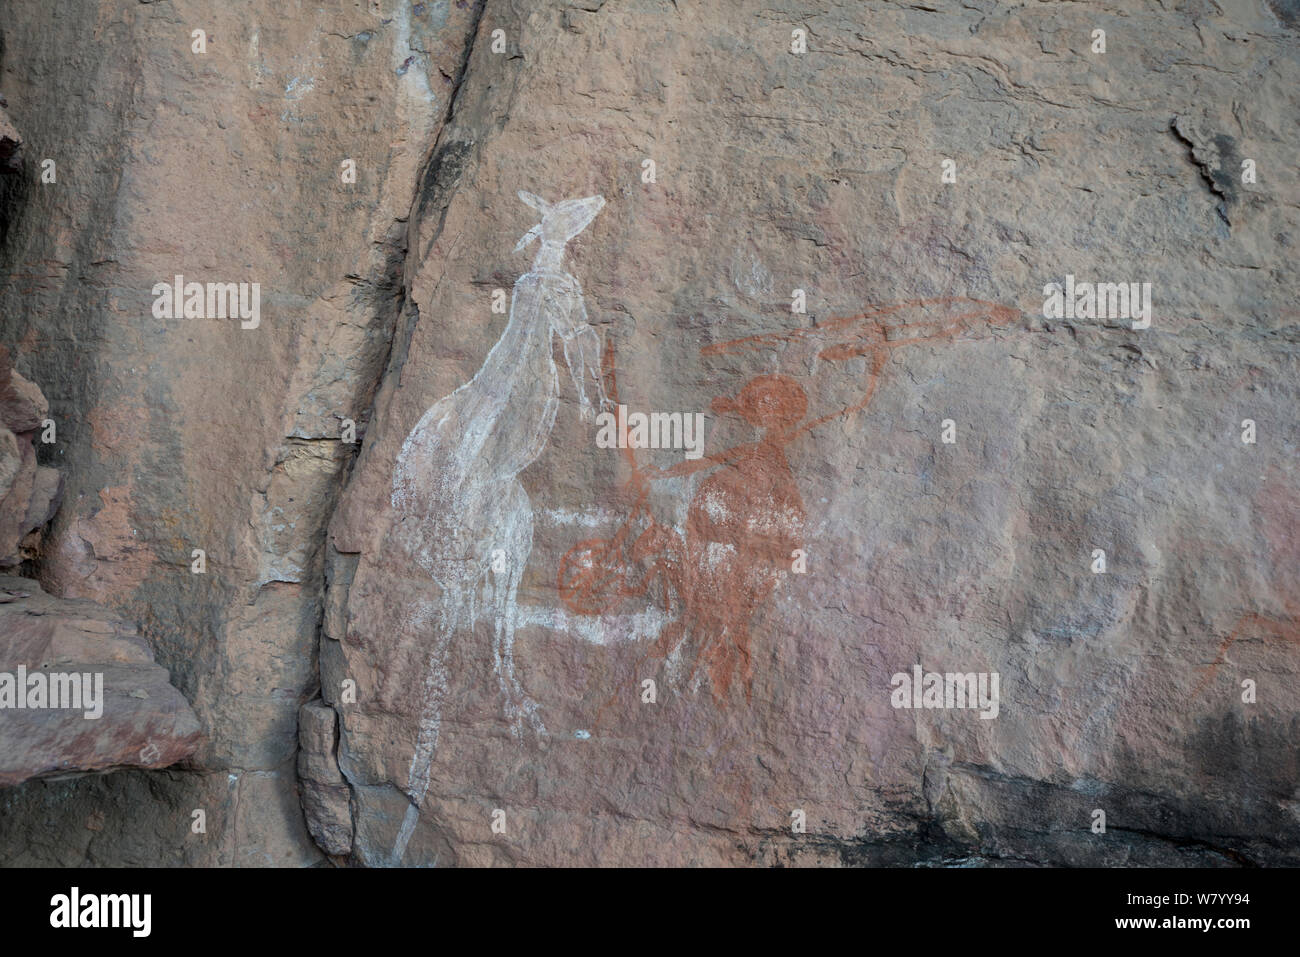 Art rupestre aborigène de kangourou et Hunter, de Kakadu National Park, Territoire du Nord, Australie. Décembre 2012. Banque D'Images